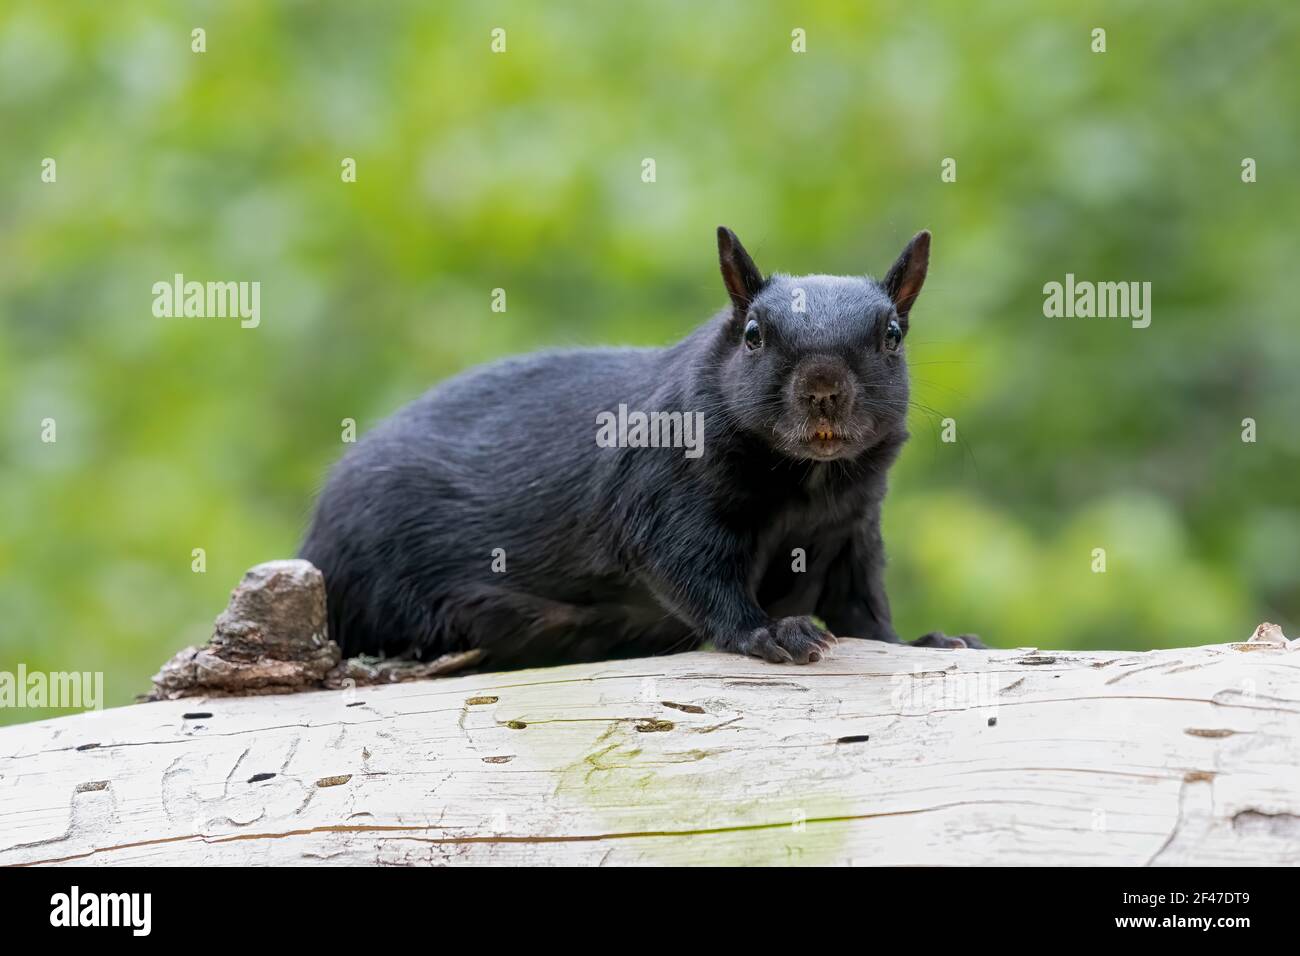 Schwarzes Eichhörnchen (melanistisches Ostgrauhörnchen), das an einem warmen Tag im Wald ruht. Schau dir diese orangen Zähne an! Stockfoto